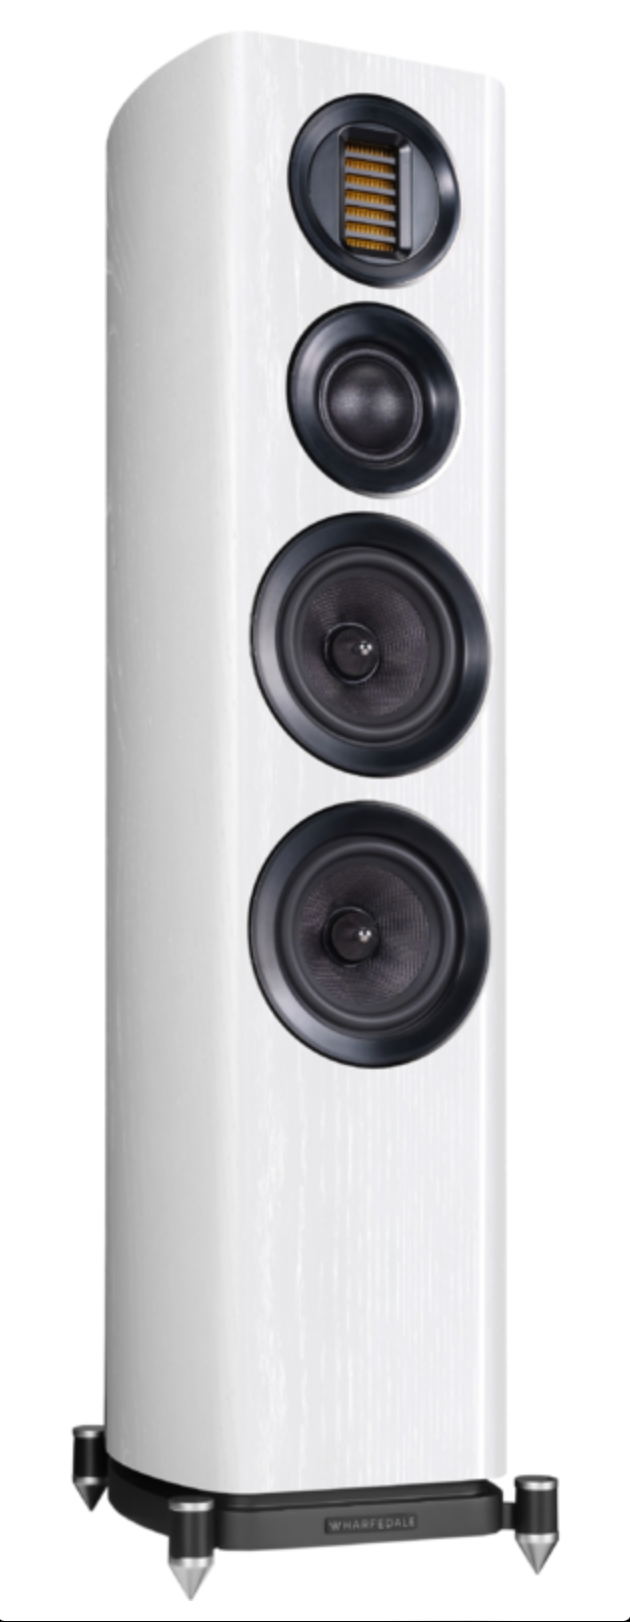 Wharfedale Evo 4.3 speakers